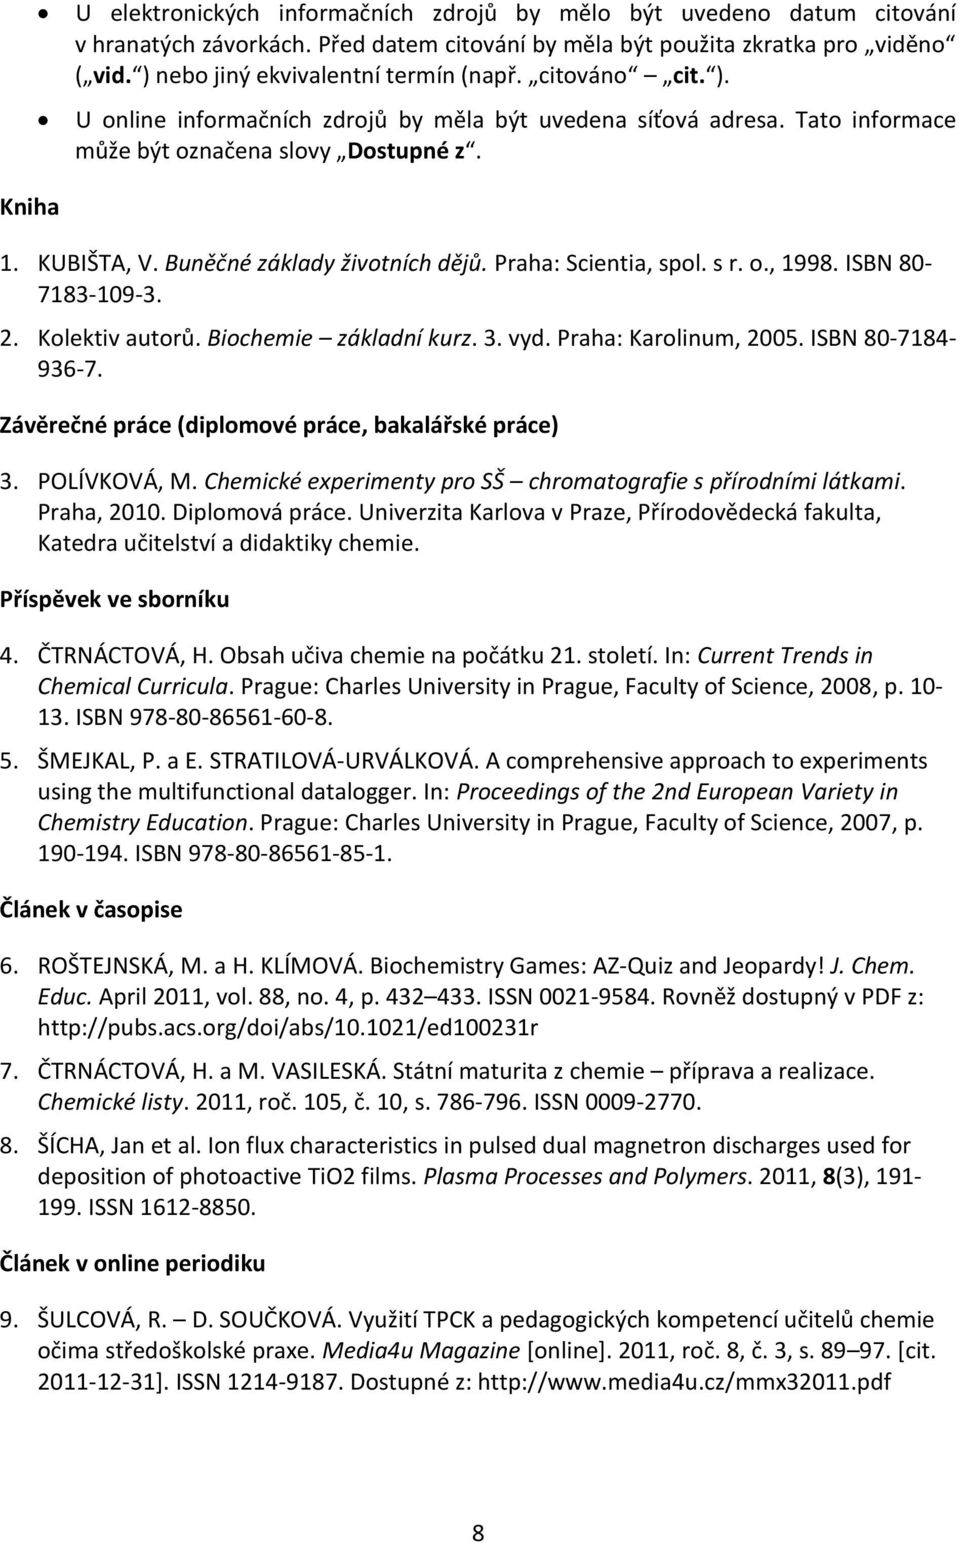 Praha: Scientia, spol. s r. o., 1998. ISBN 80-7183-109-3. 2. Kolektiv autorů. Biochemie základní kurz. 3. vyd. Praha: Karolinum, 2005. ISBN 80-7184- 936-7.